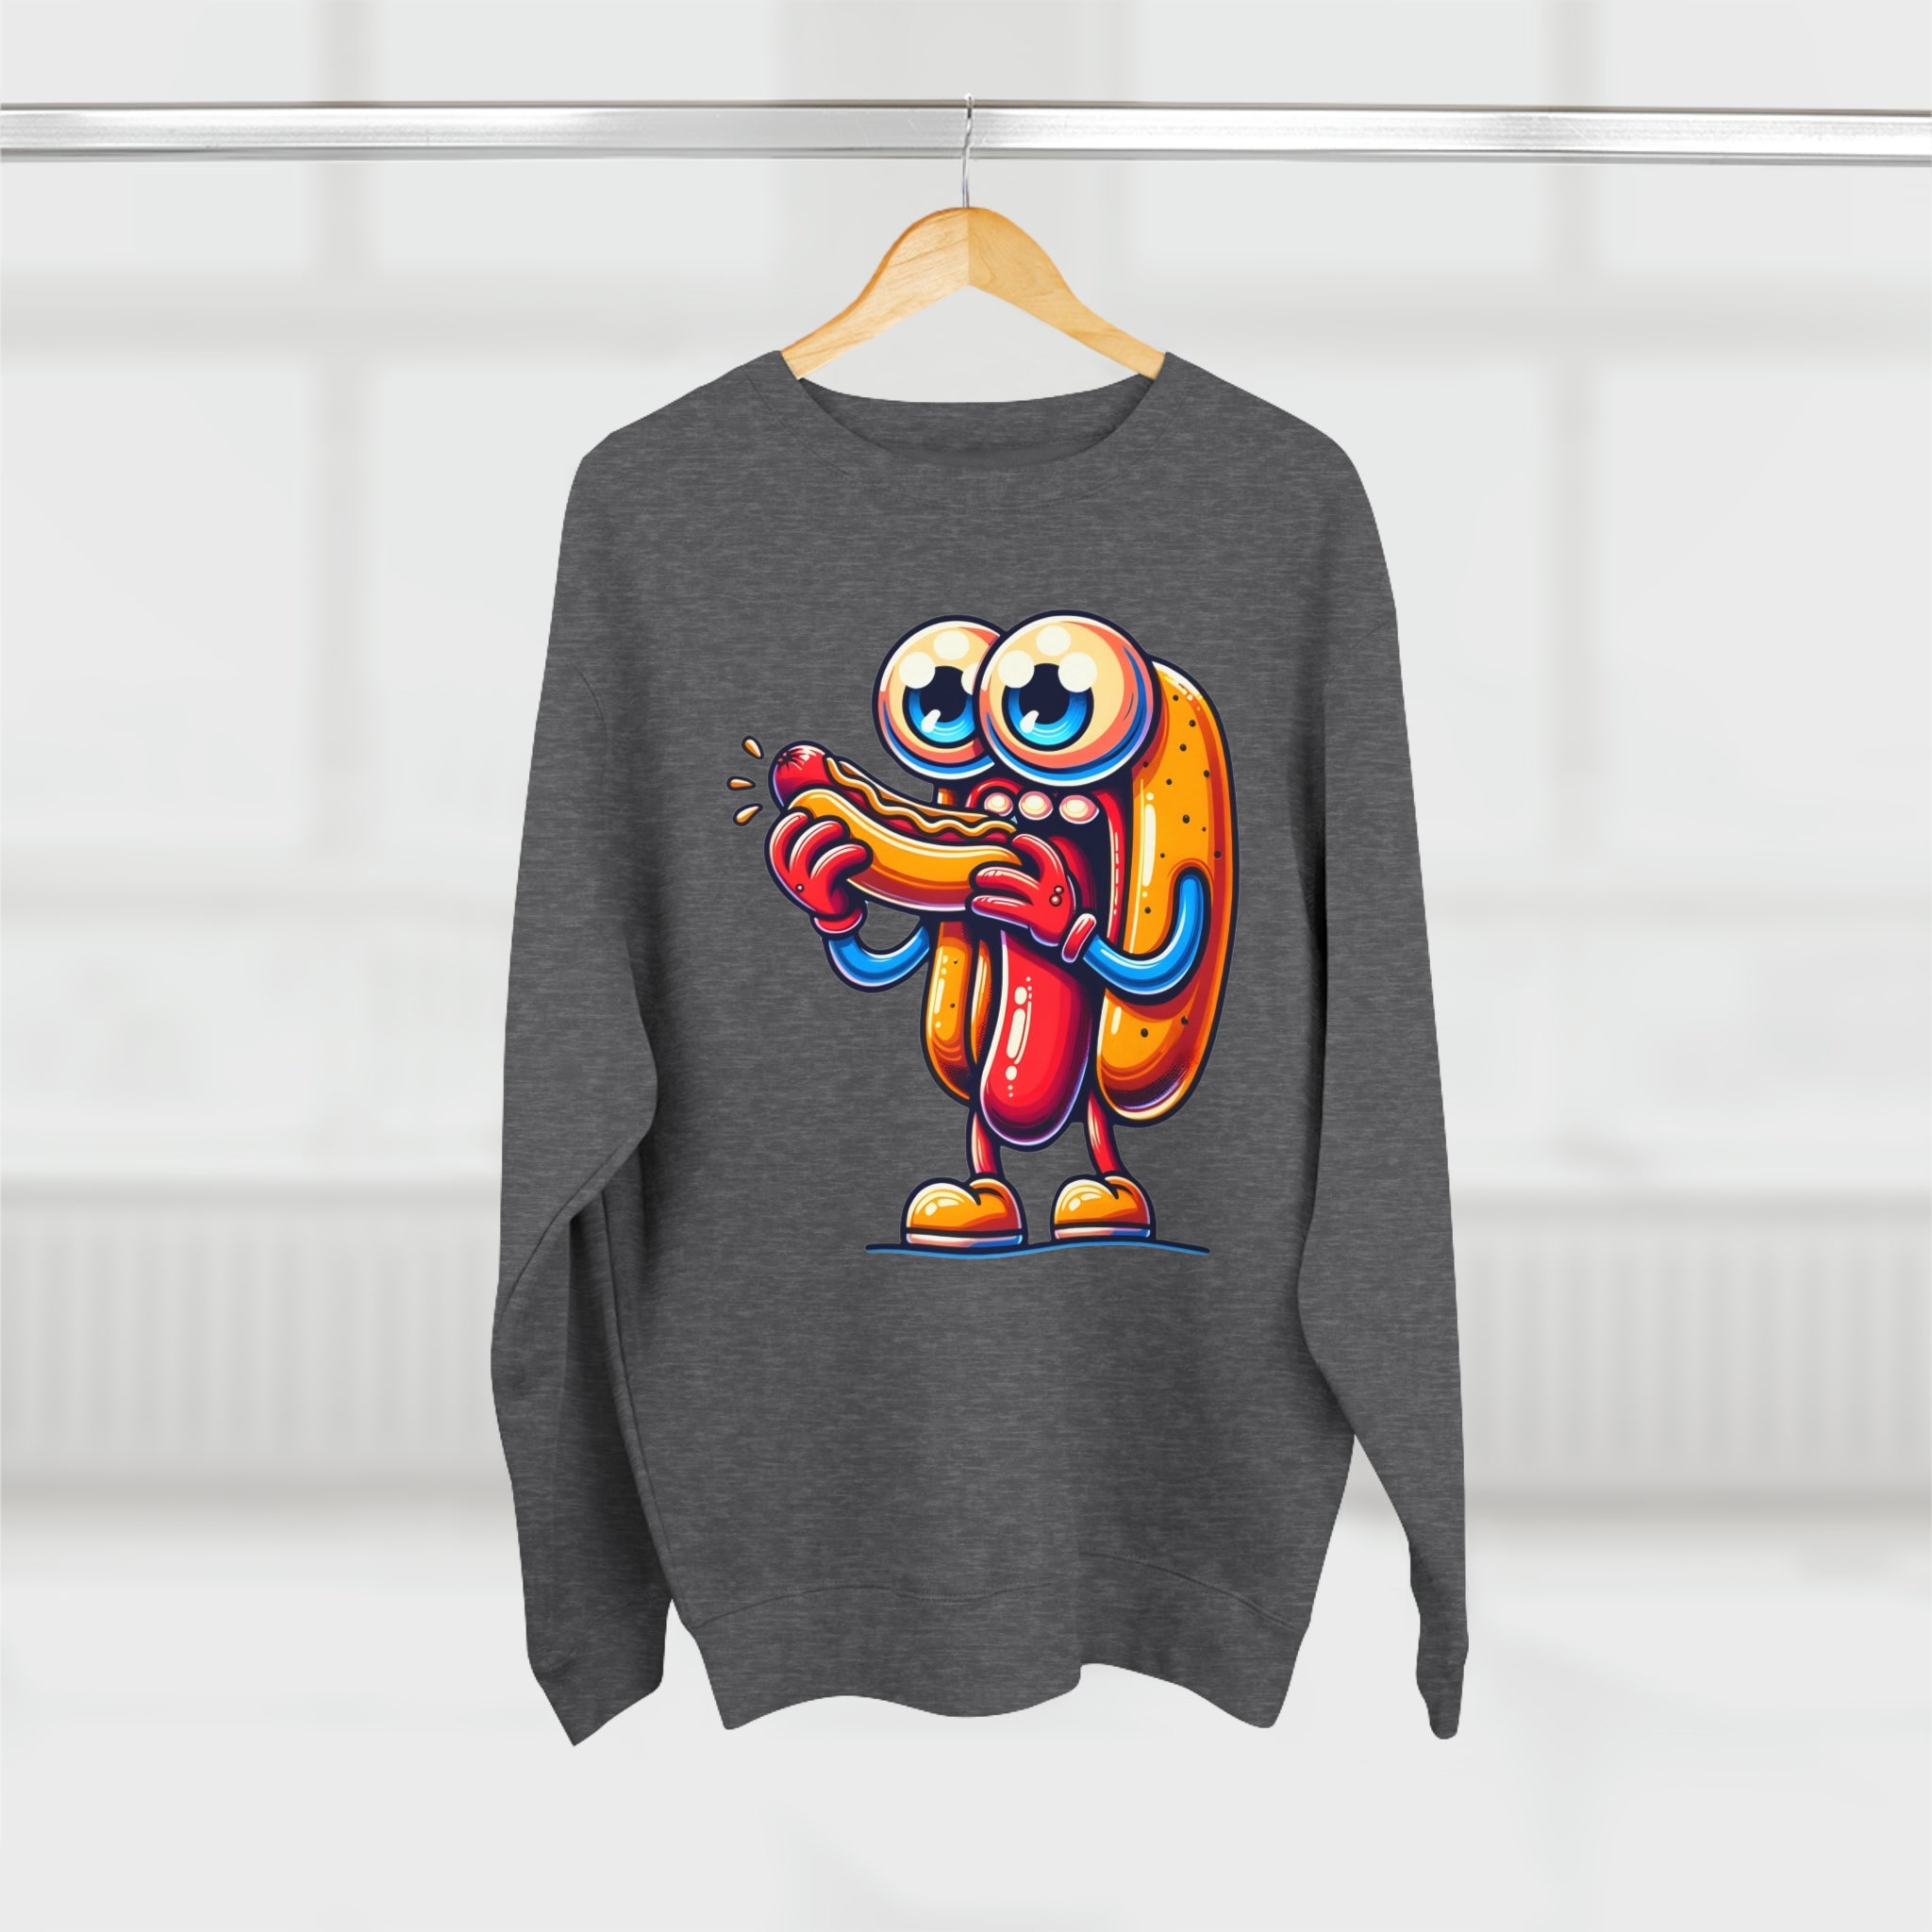 Sweatshirt The Cannibal Hotdog Sweatshirt - Irony Bites Back